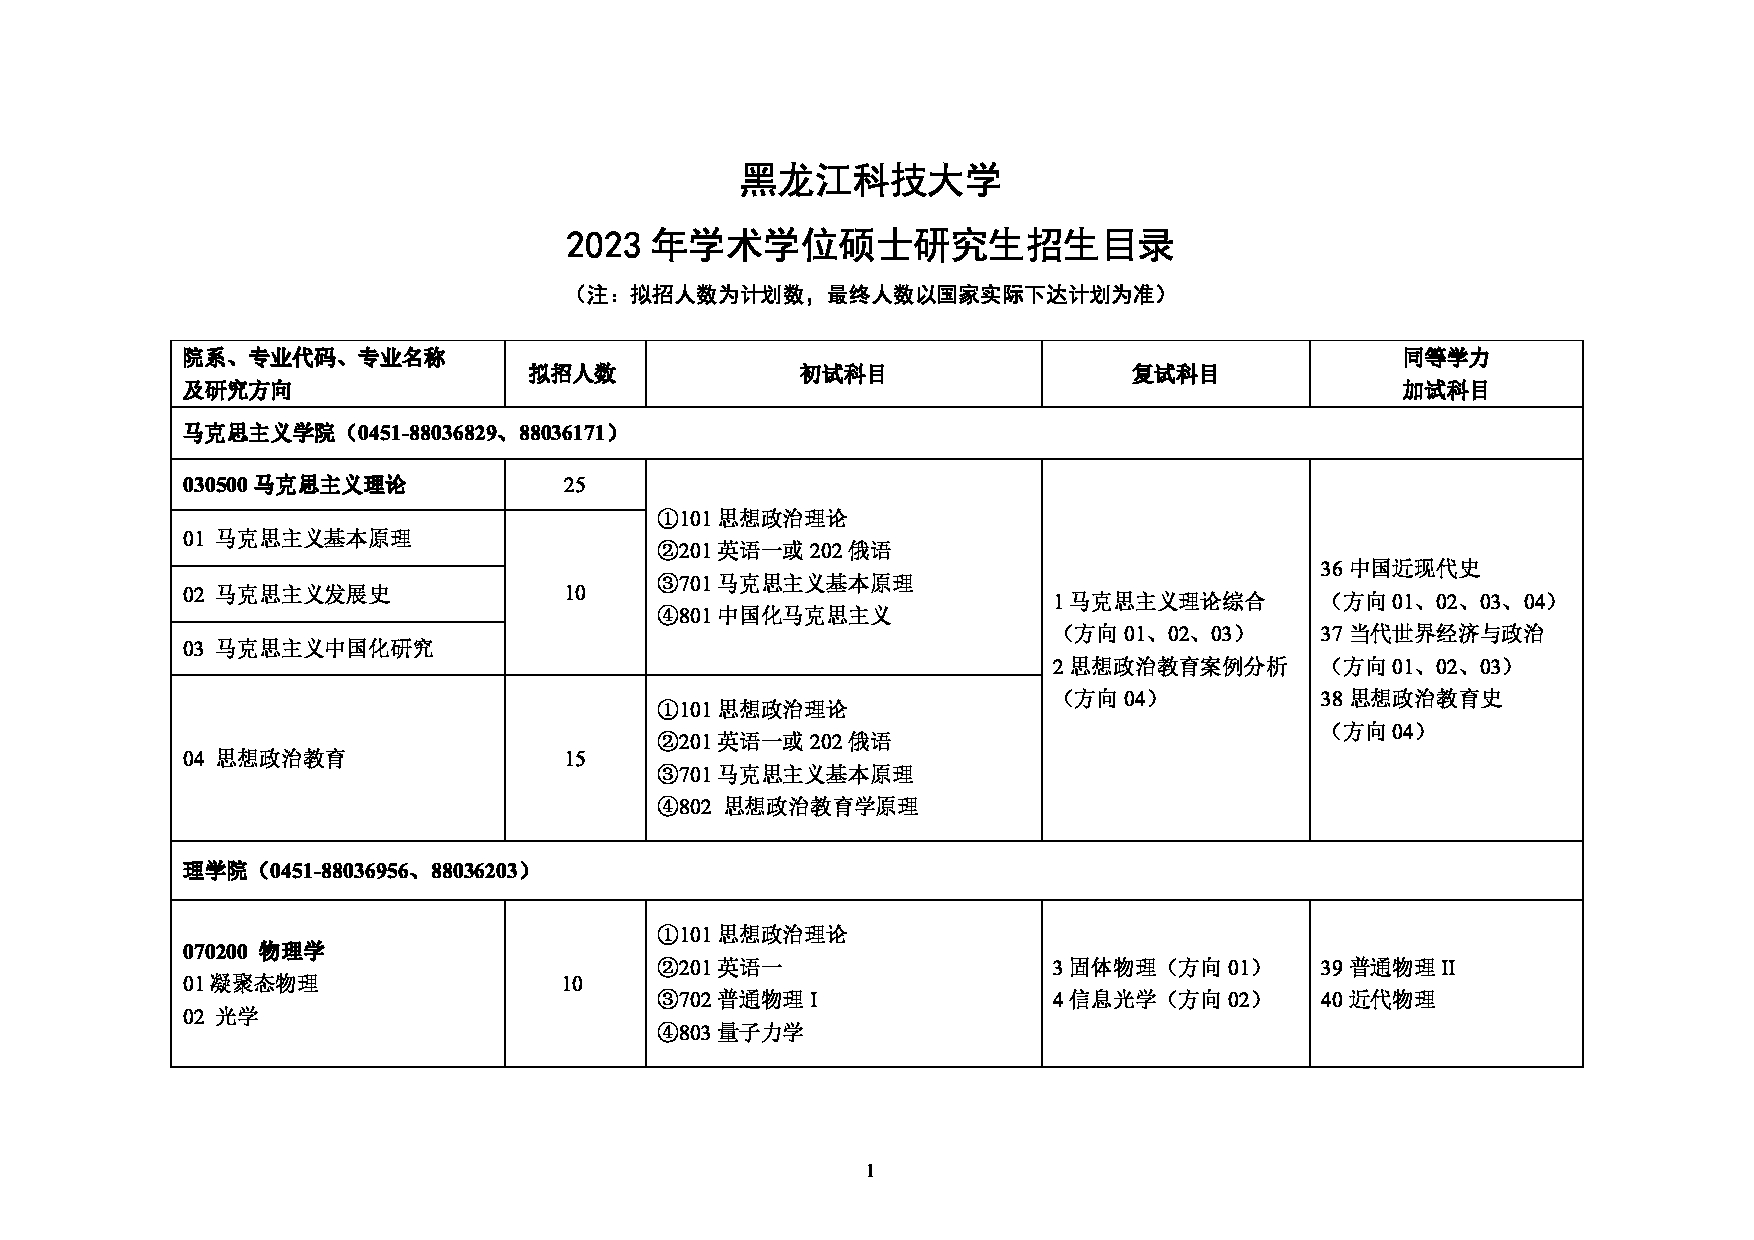 2023招生目录：黑龙江科技大学2023年硕士研究生招生目录第1页